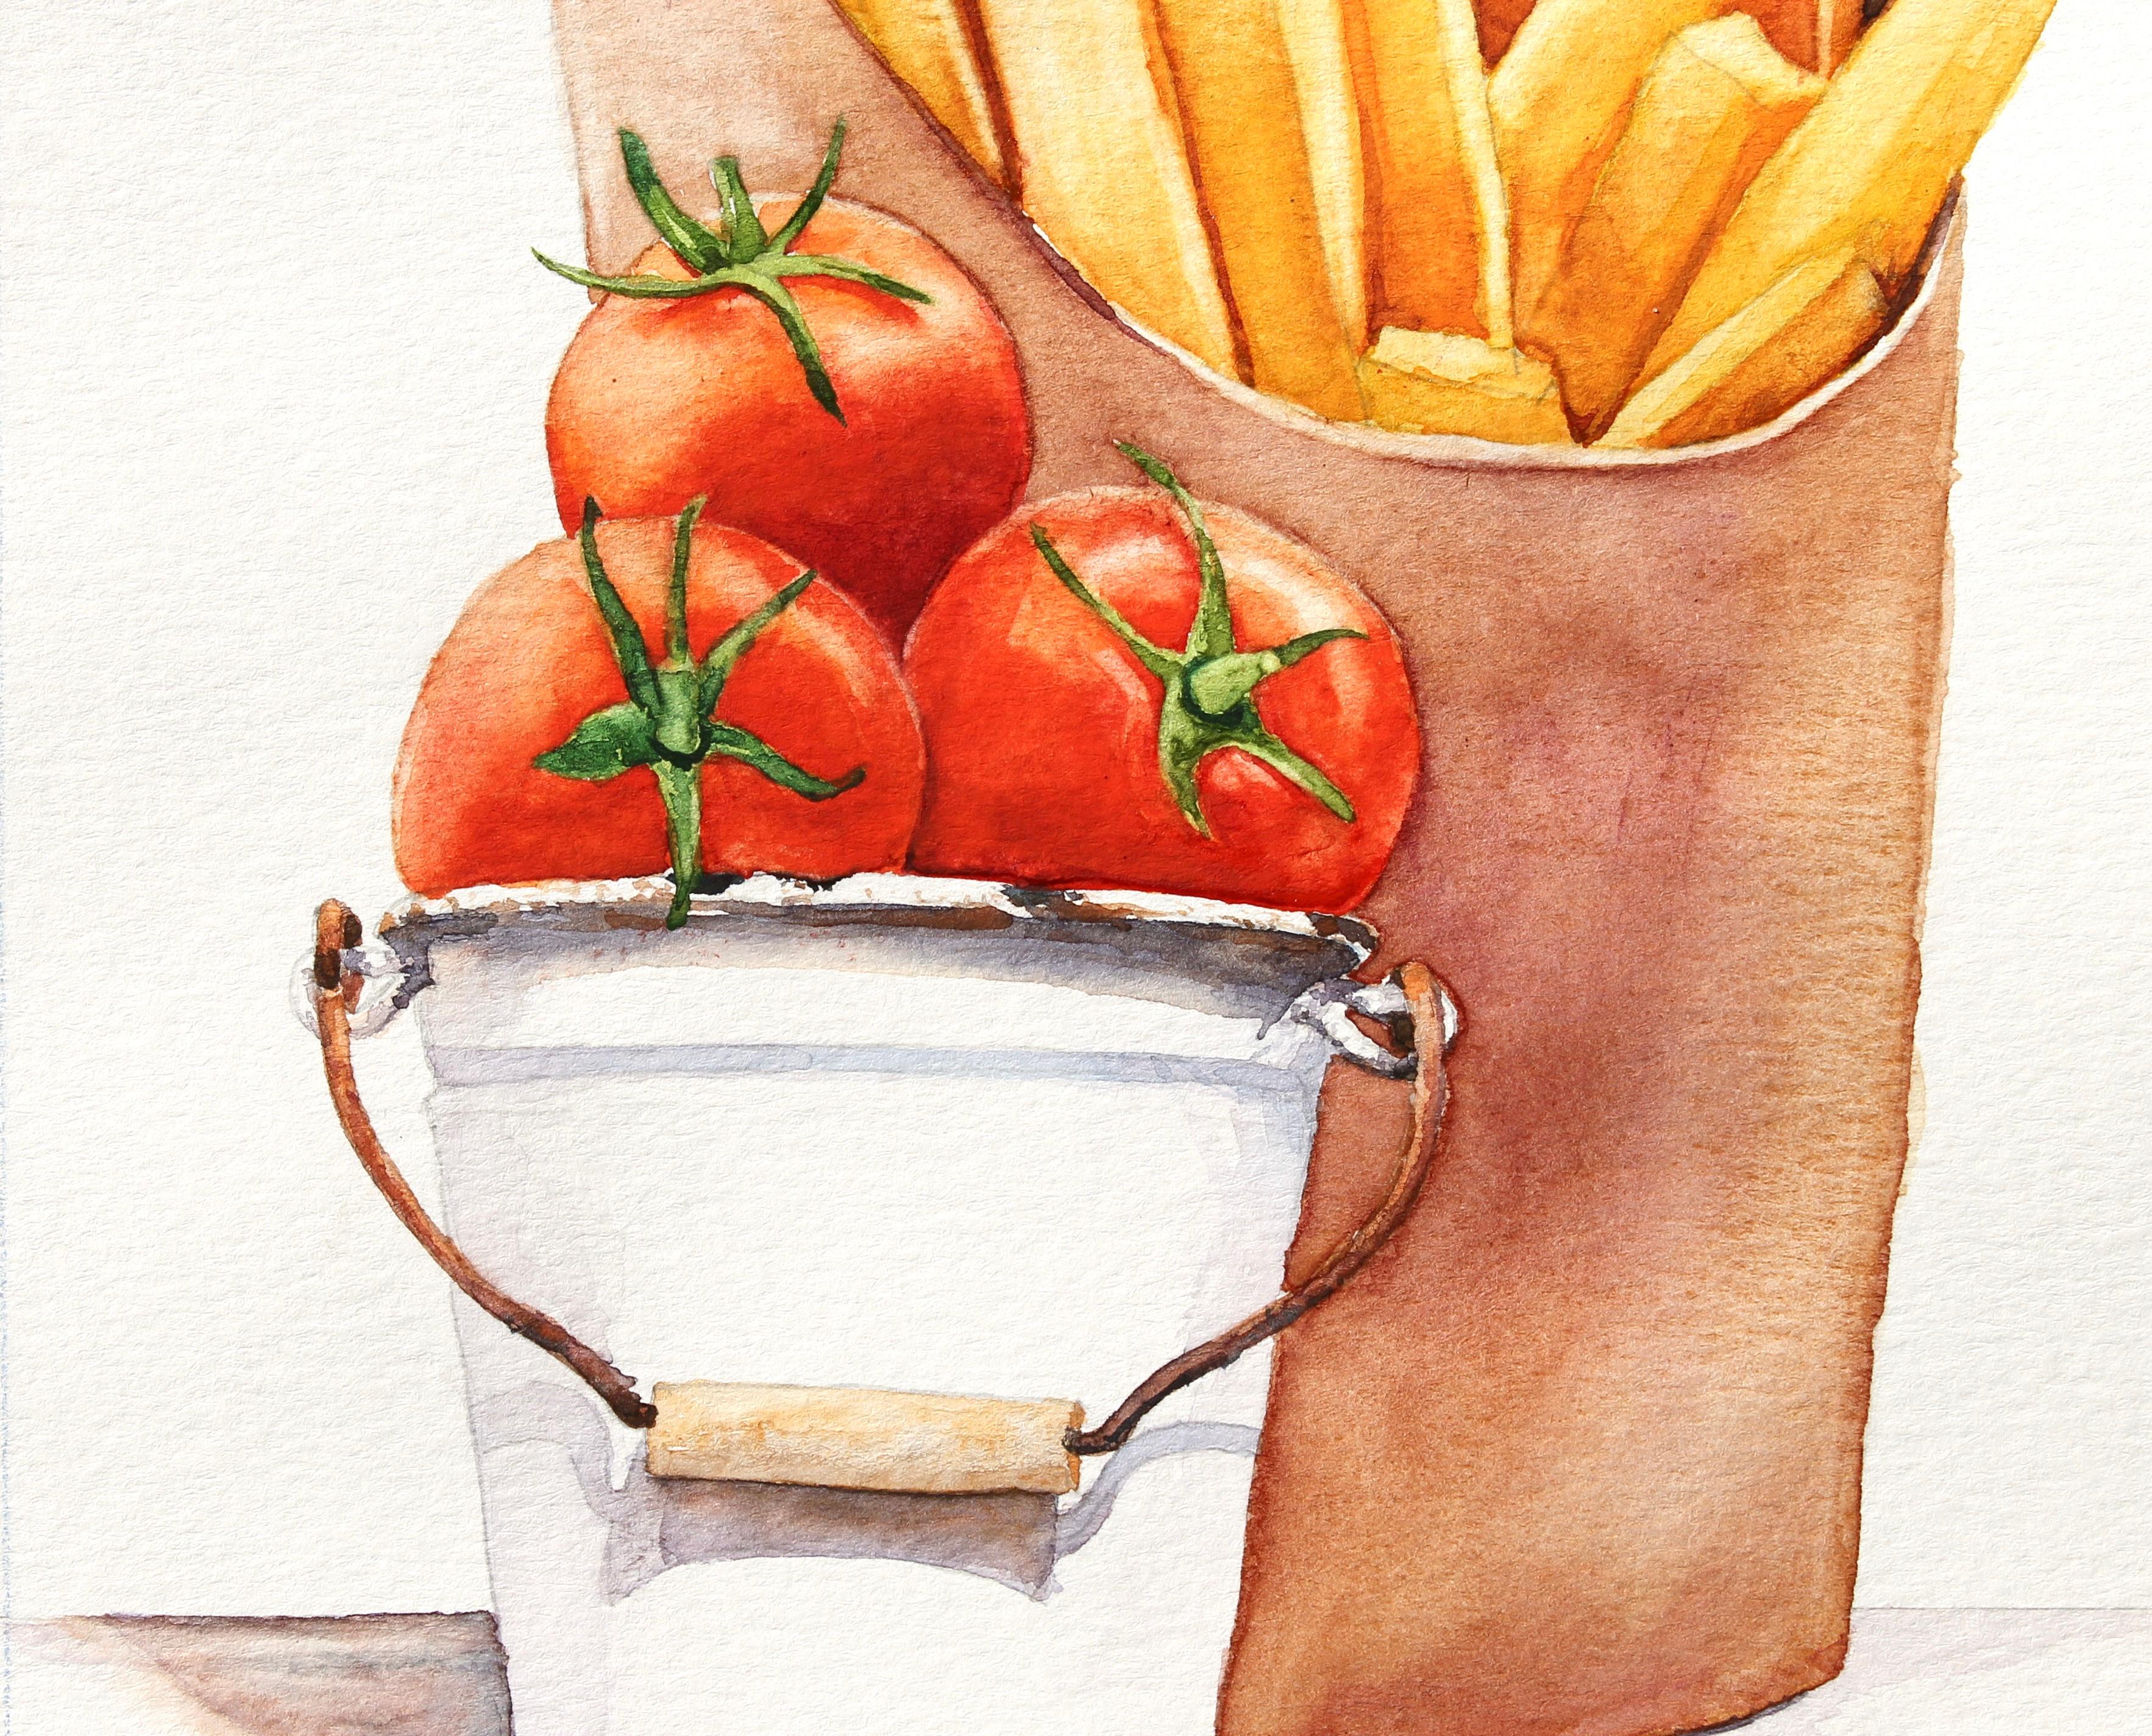 <p>Kommentare des Künstlers<br>Der Künstler Dwight Smith präsentiert ein Stillleben einer Bestellung von Pommes frites mit einem Eimer Tomaten daneben. Eine realistische Darstellung des beliebten Snacks mit einem modernen Twist. Er stellt Ketchup